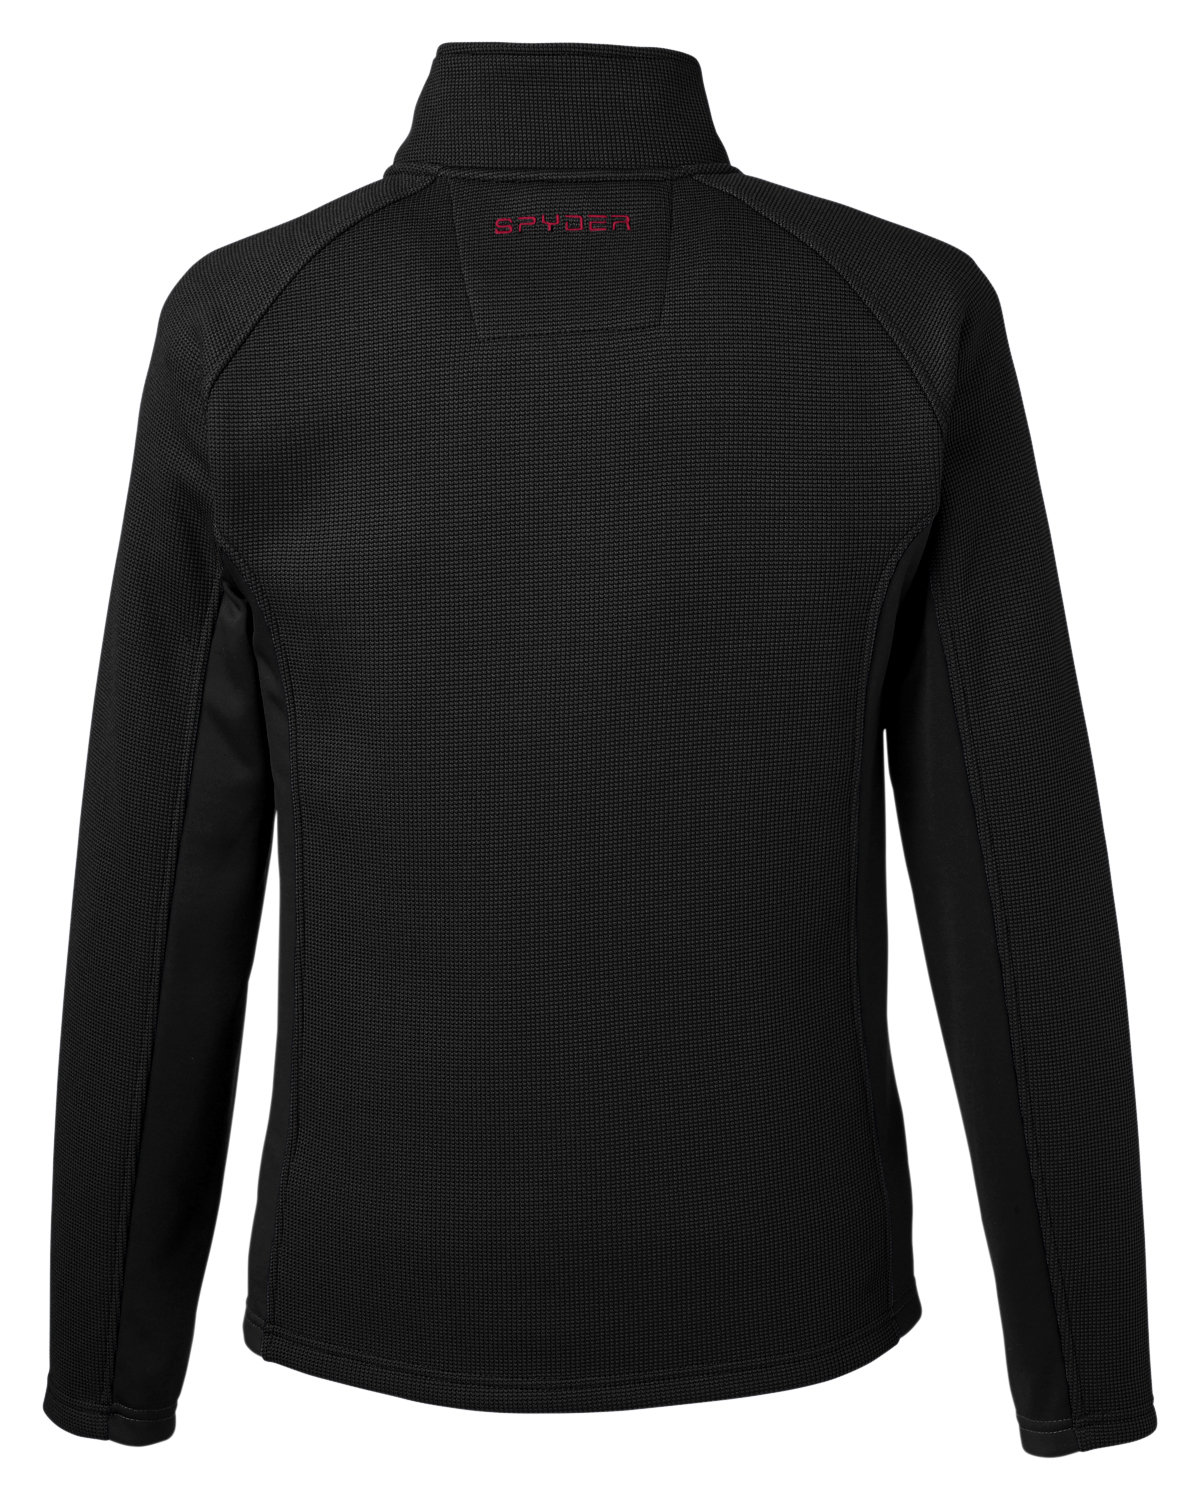 Spyder Mens Constant Full Zip Sweater Black Gameday Jacket